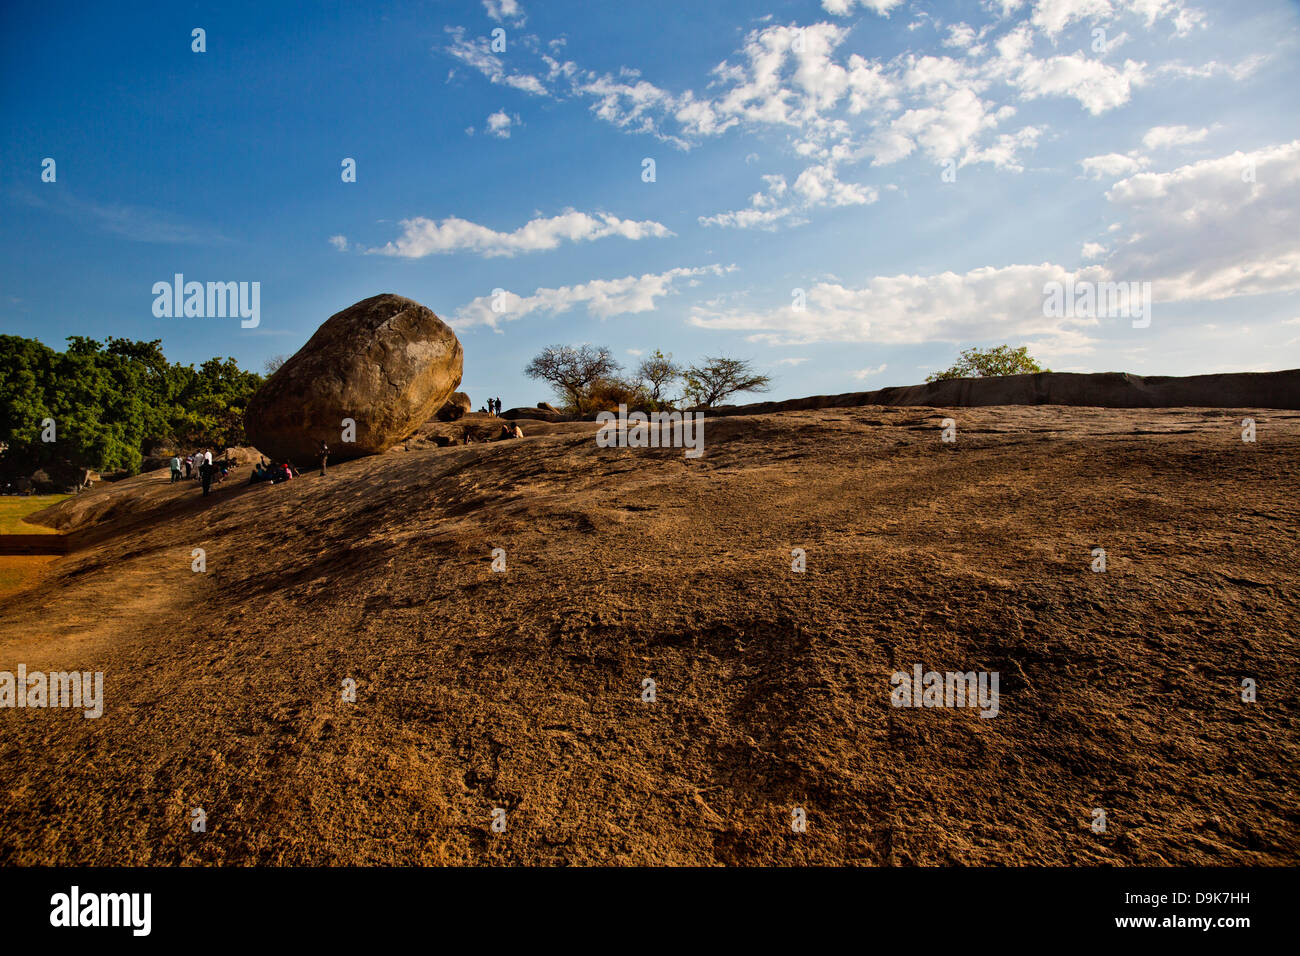 Rock sur une colline, Krishna's Butter Ball, Mahabalipuram, district de Kanchipuram, au Tamil Nadu, Inde Banque D'Images